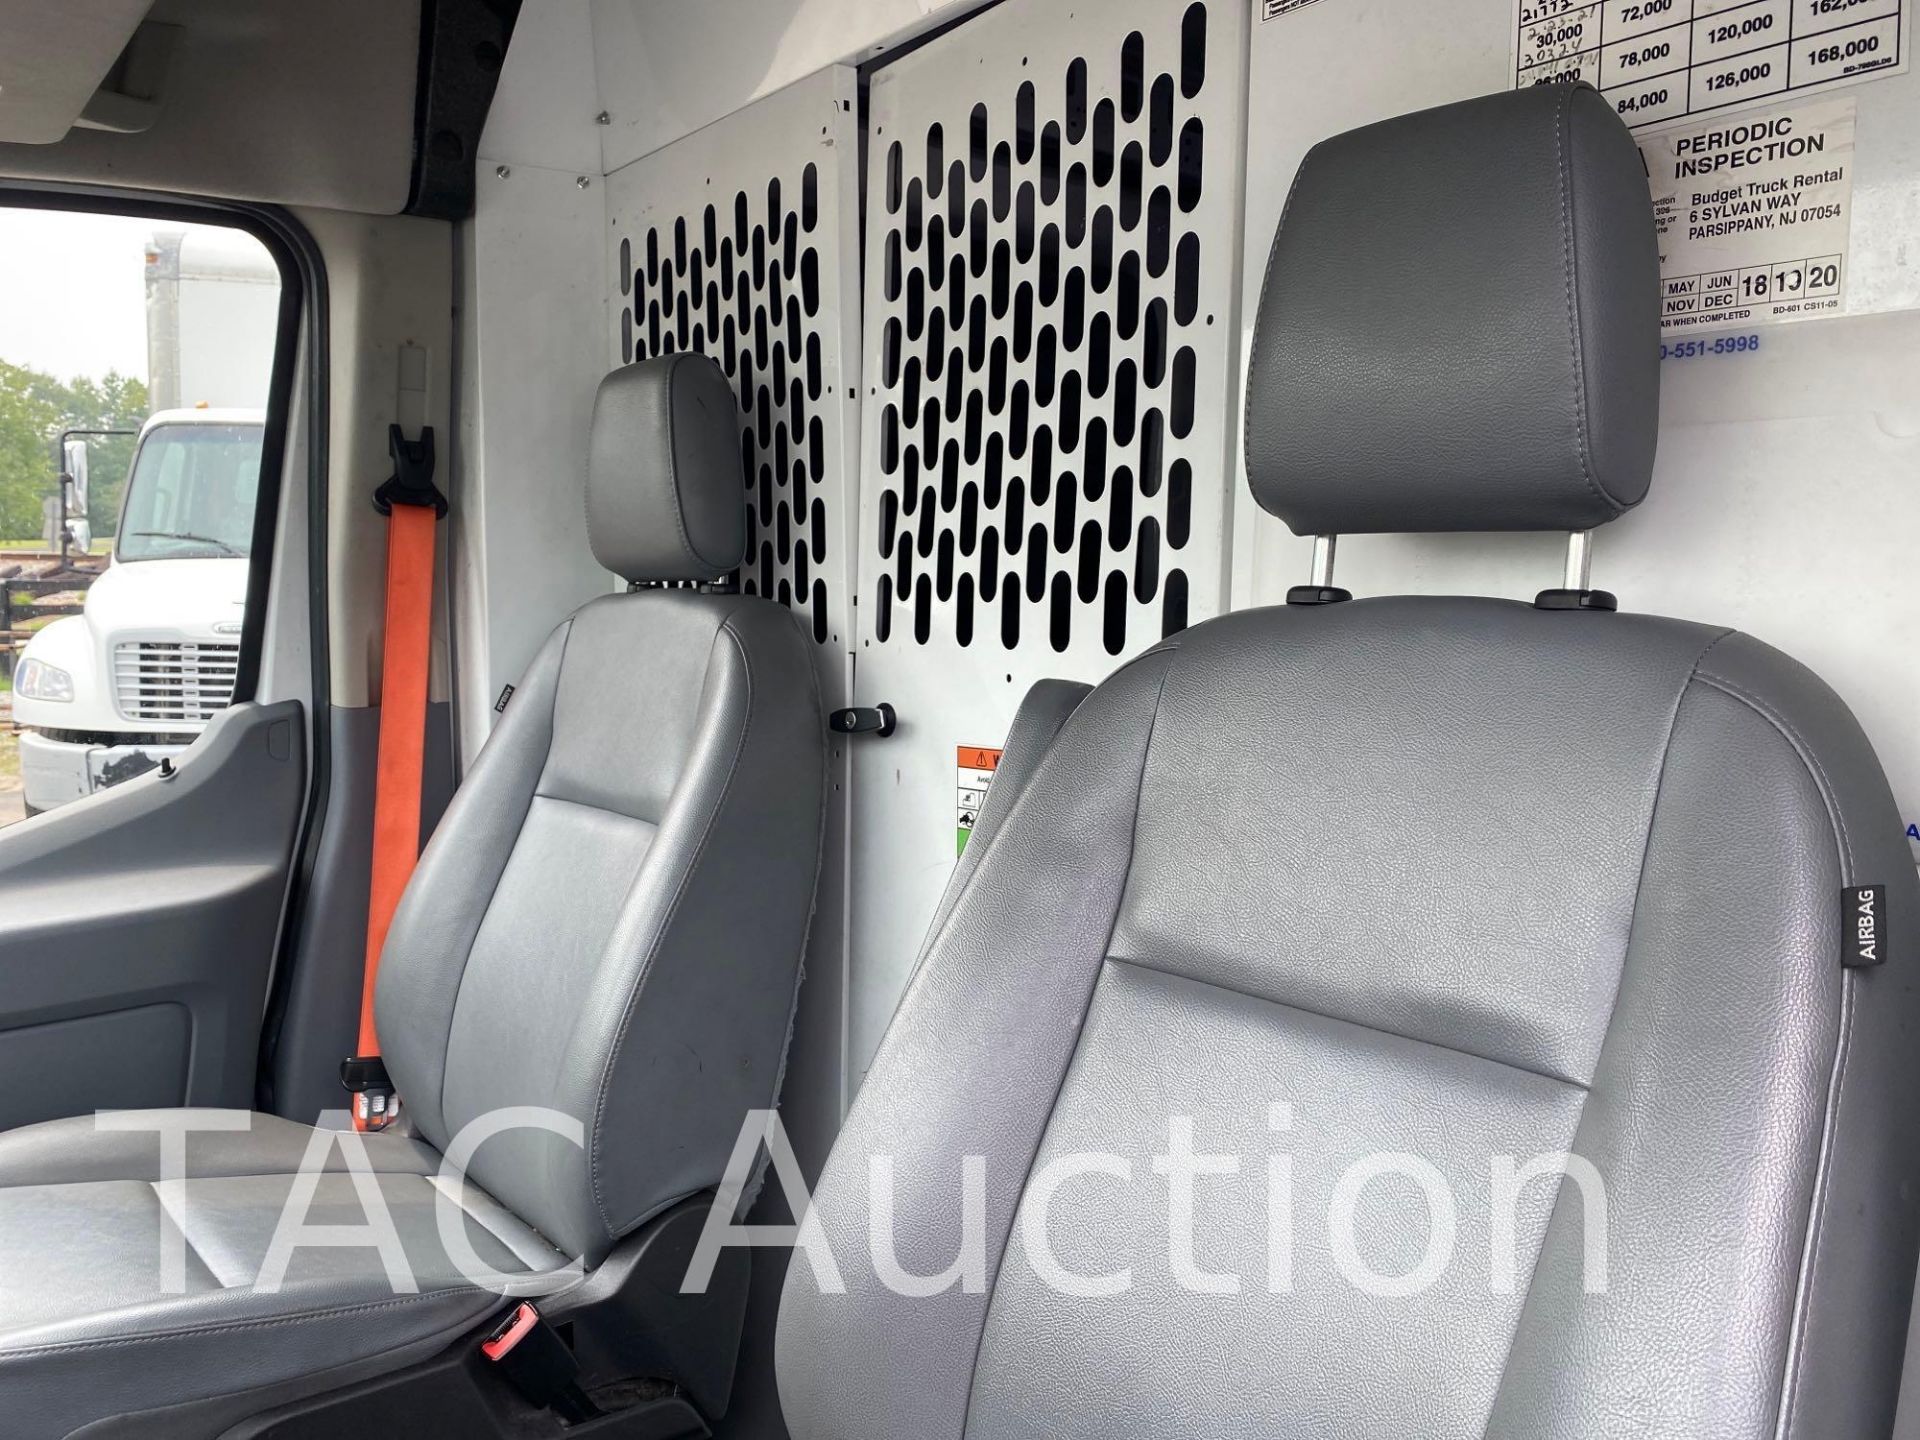 2019 Ford Transit 150 Cargo Van - Image 10 of 52